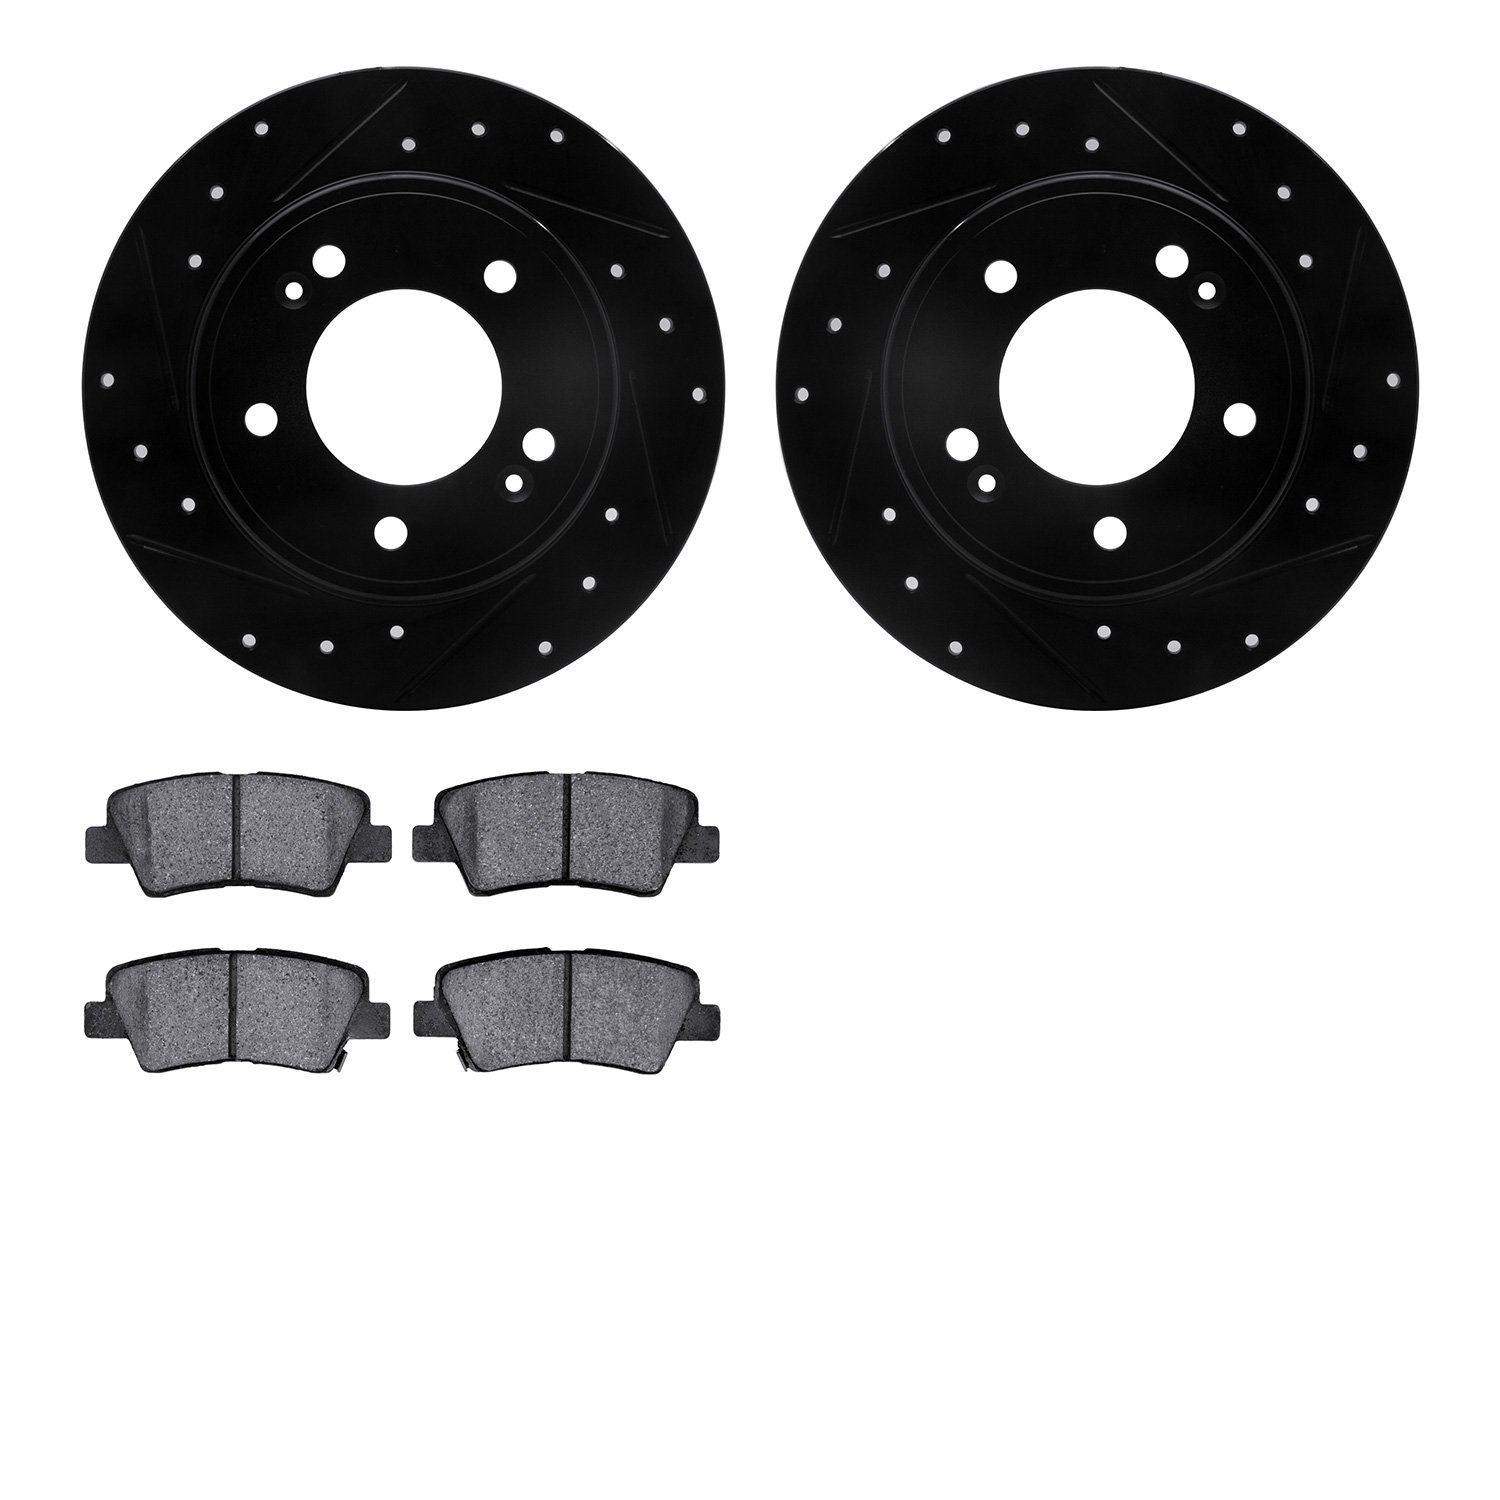 8302-03080 Drilled/Slotted Brake Rotors with 3000-Series Ceramic Brake Pads Kit [Black], Fits Select Kia/Hyundai/Genesis, Positi